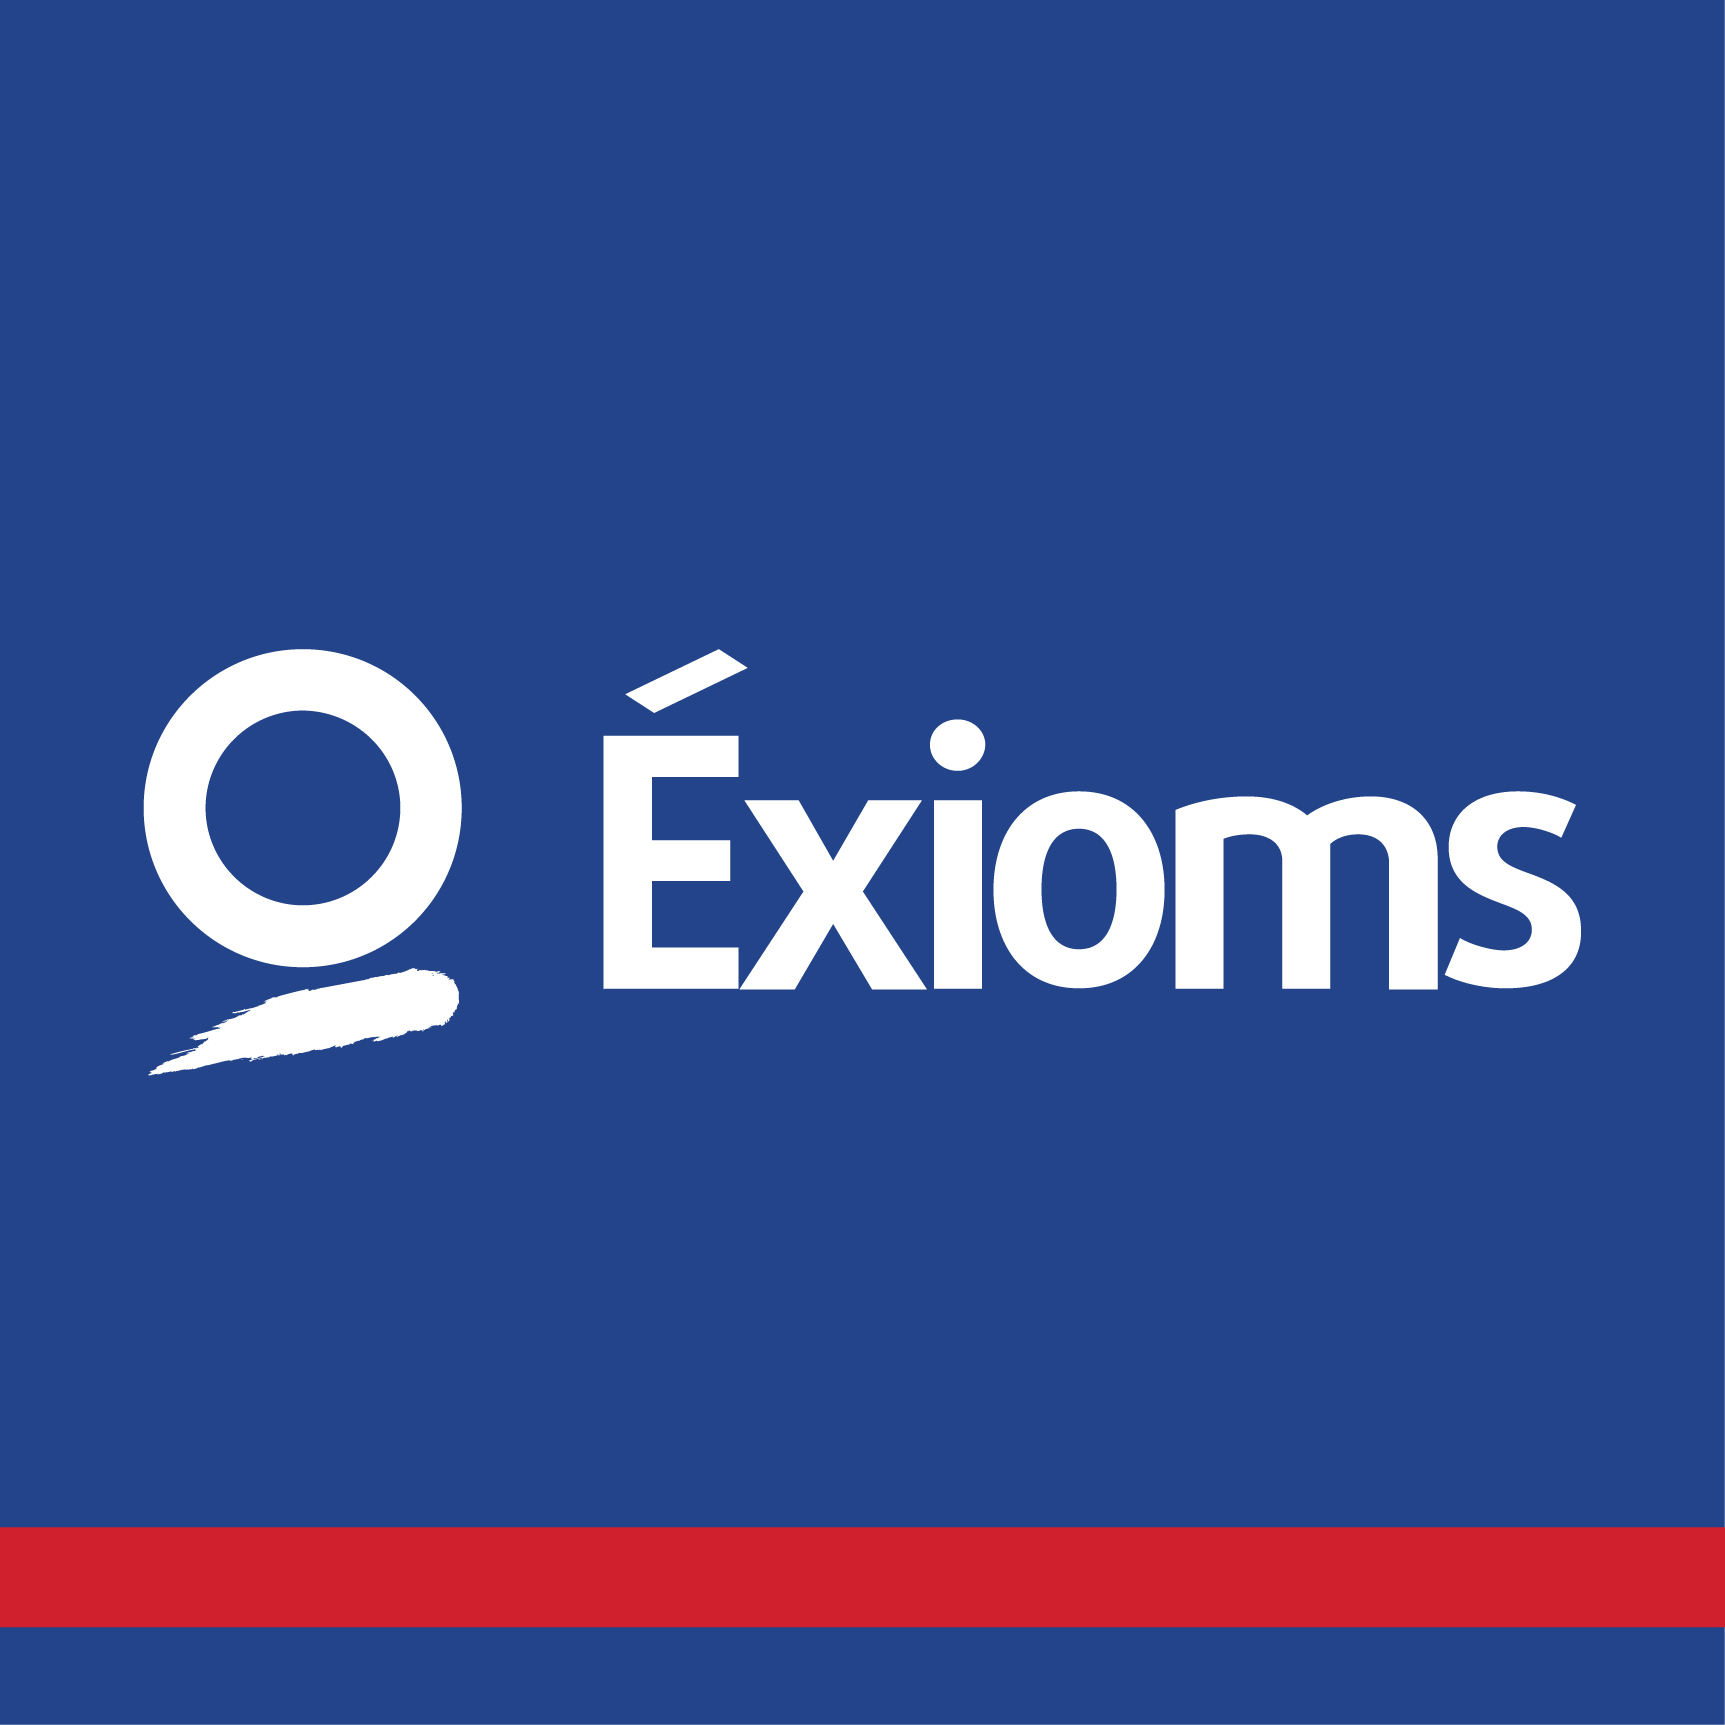 Exioms logo